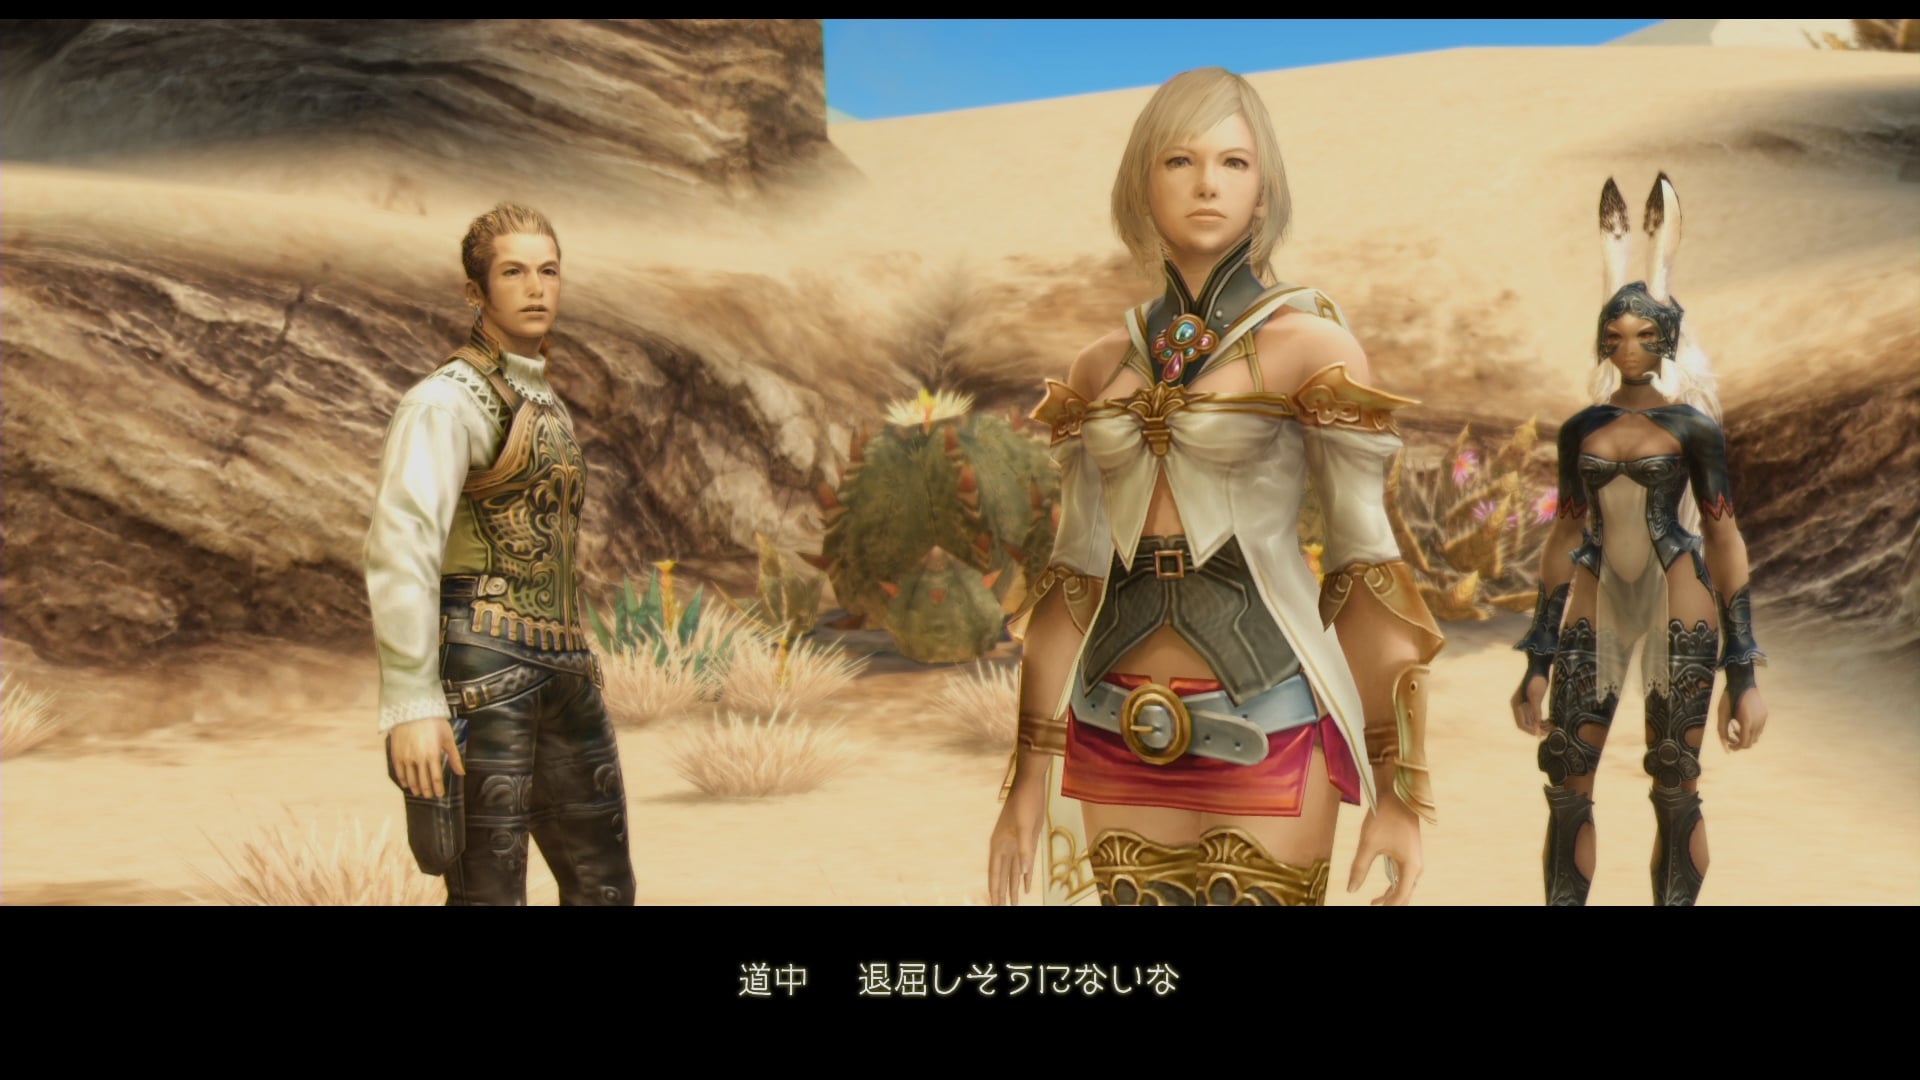 Mas imágenes en 1080p de Final Fantasy XII: The Zodiac Age